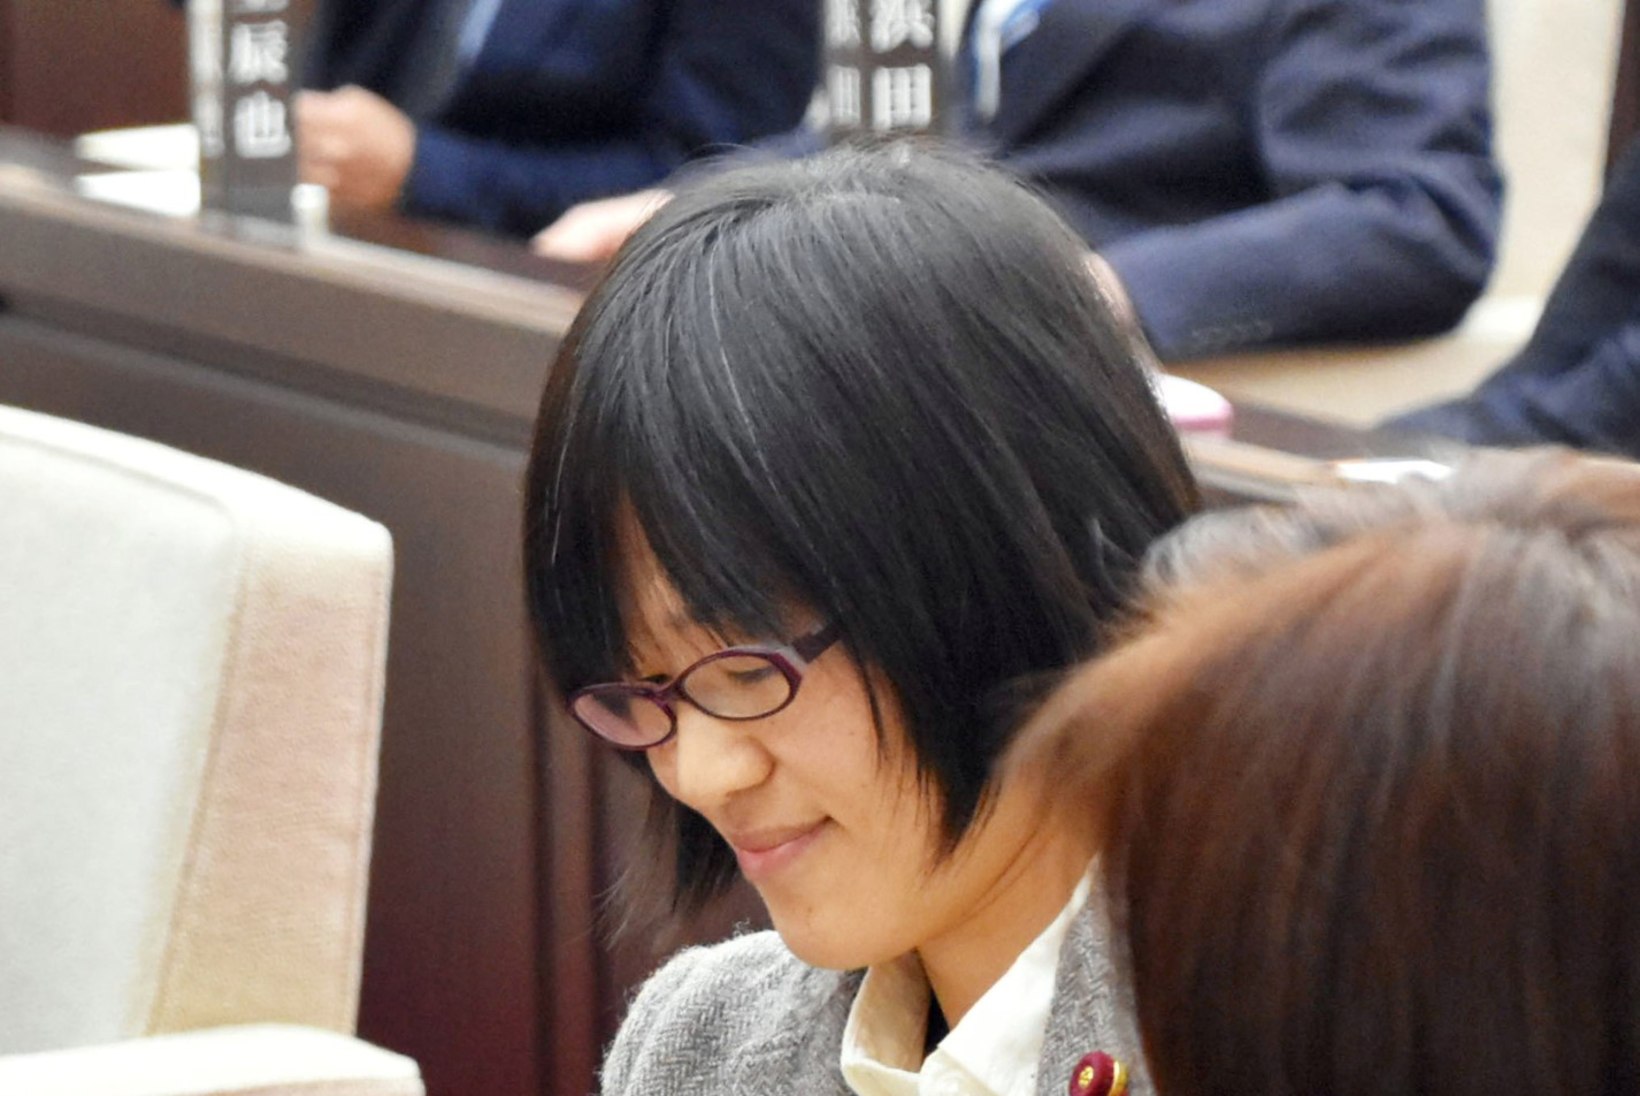 Jaapani poliitiku beebit käsitleti istungil kui kõrvalist isikut, mistõttu tuli lapsel lahkuda